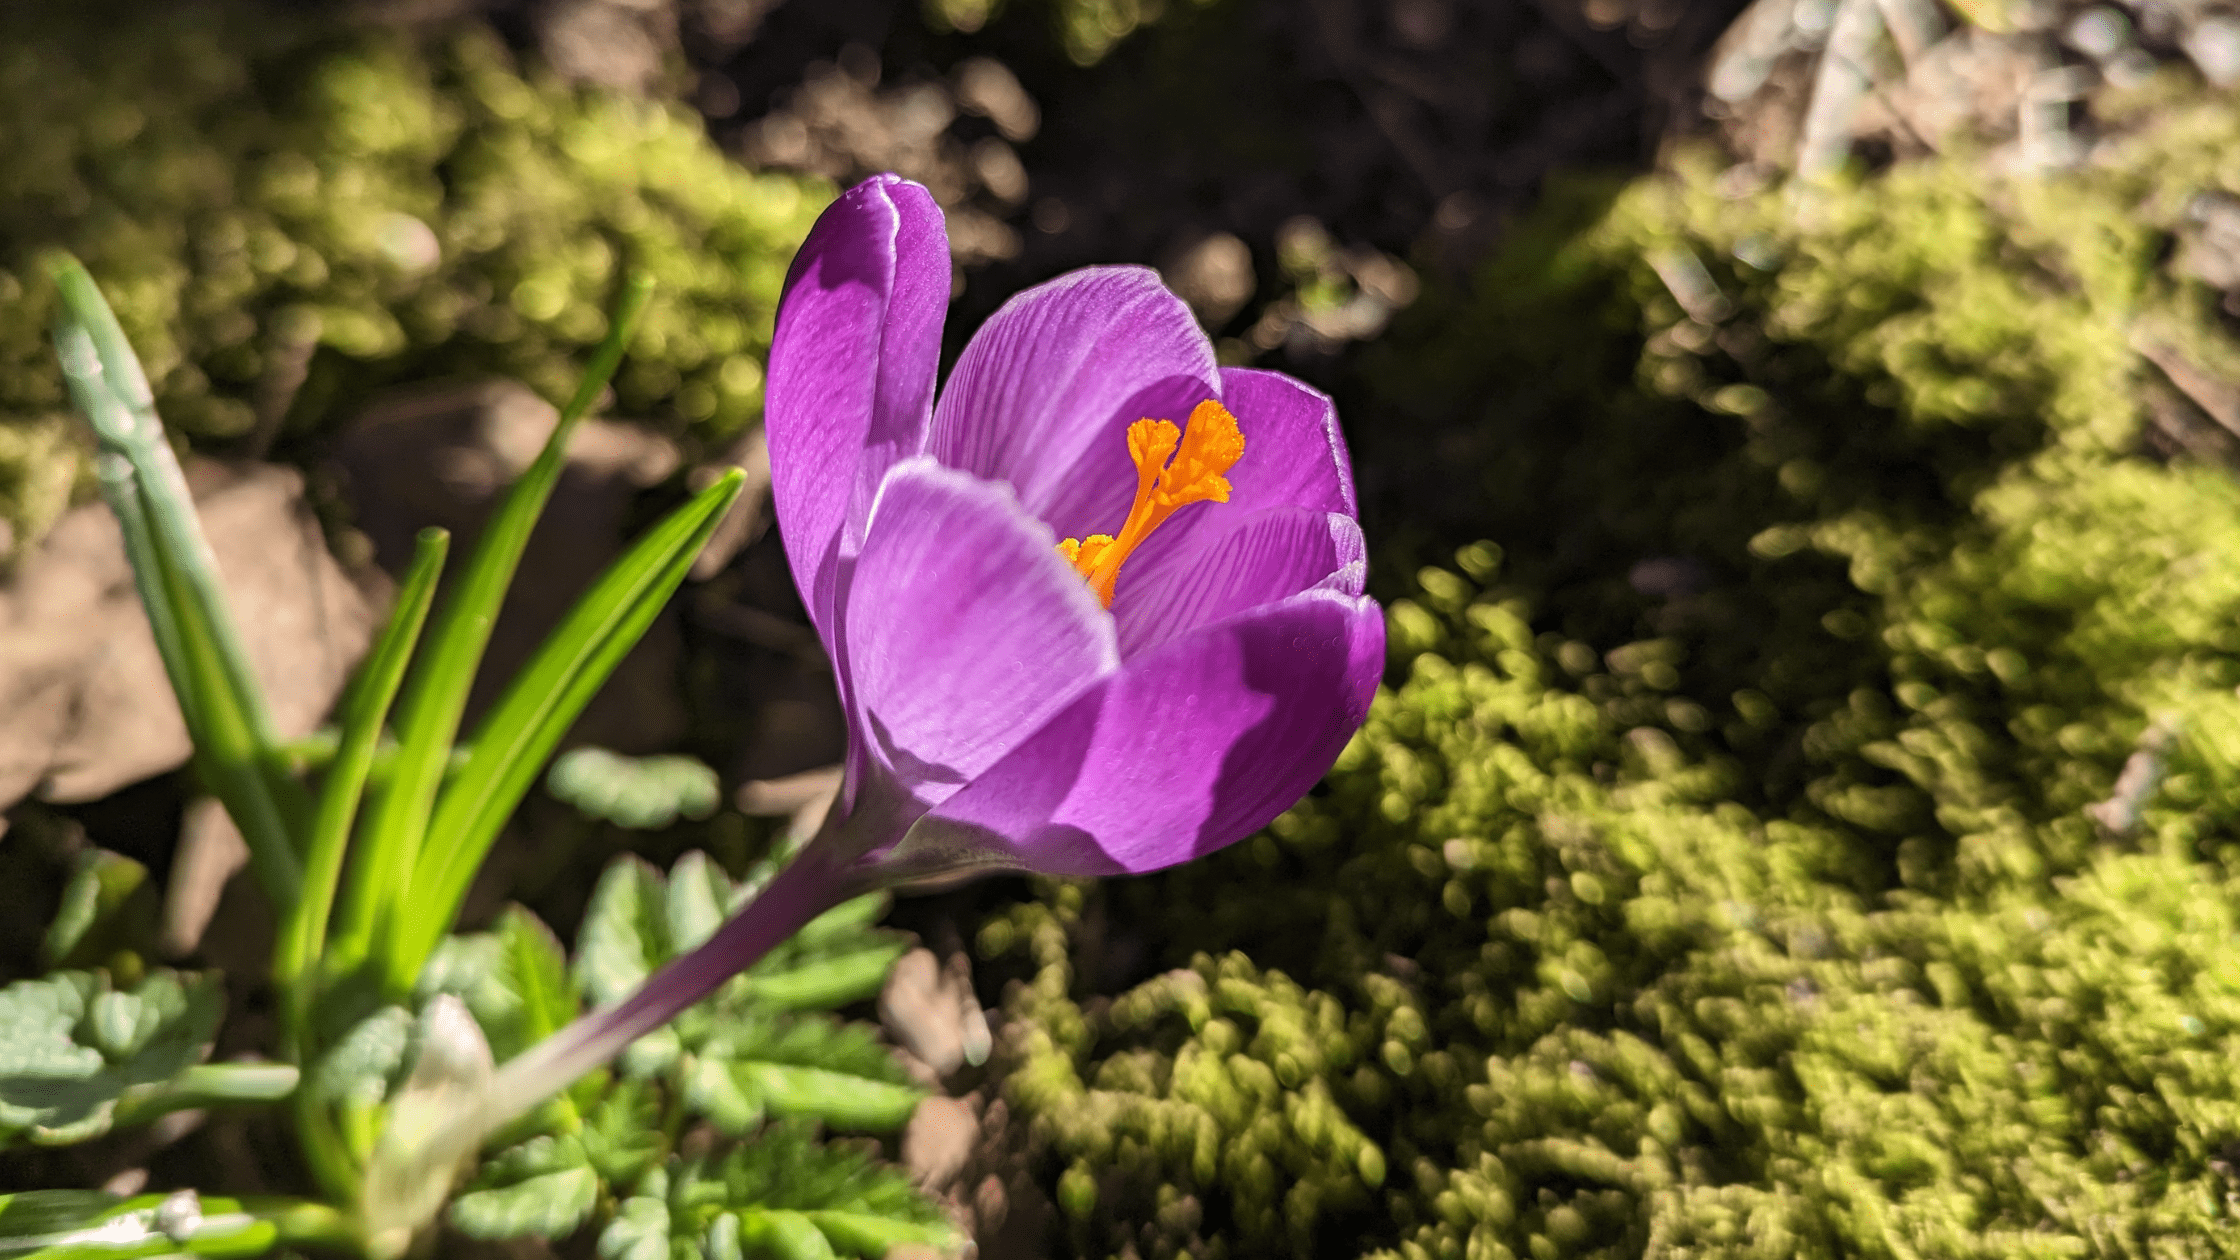 A purple crocus flowering